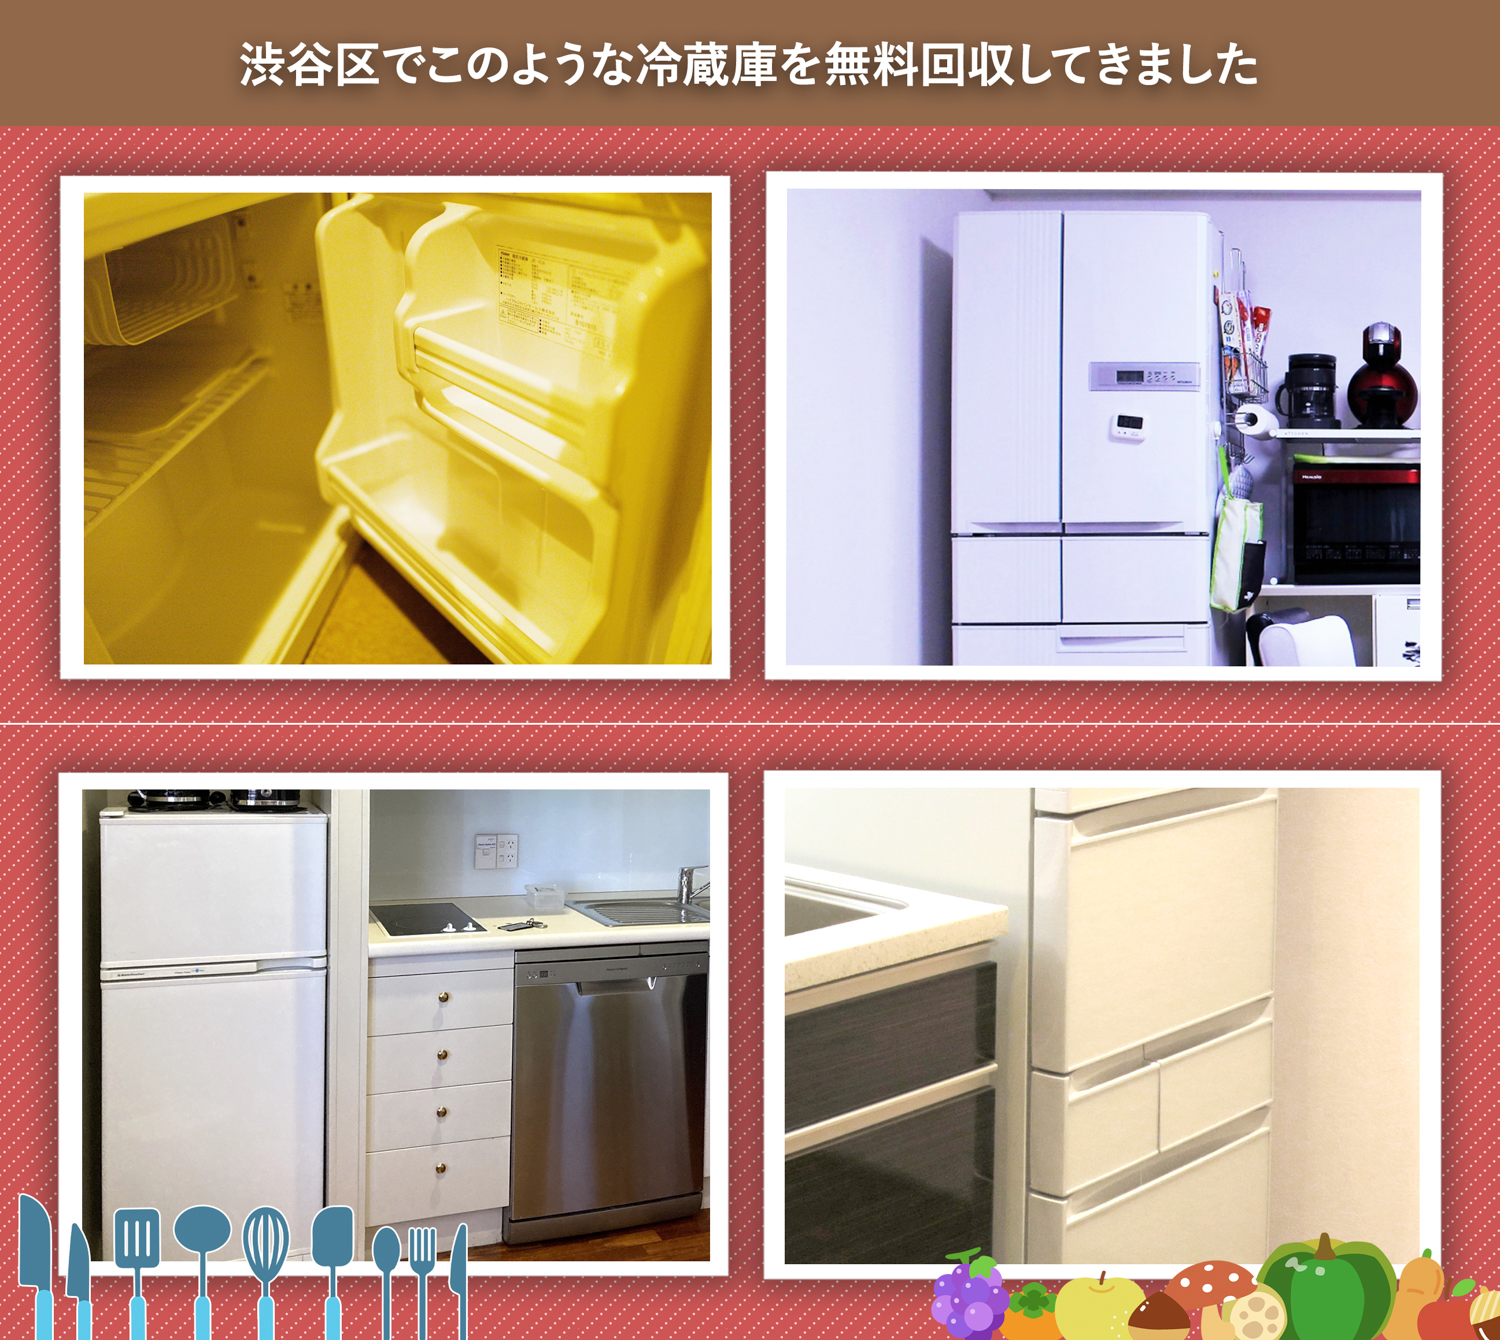 渋谷区でこのような冷蔵庫を無料回収してきました。